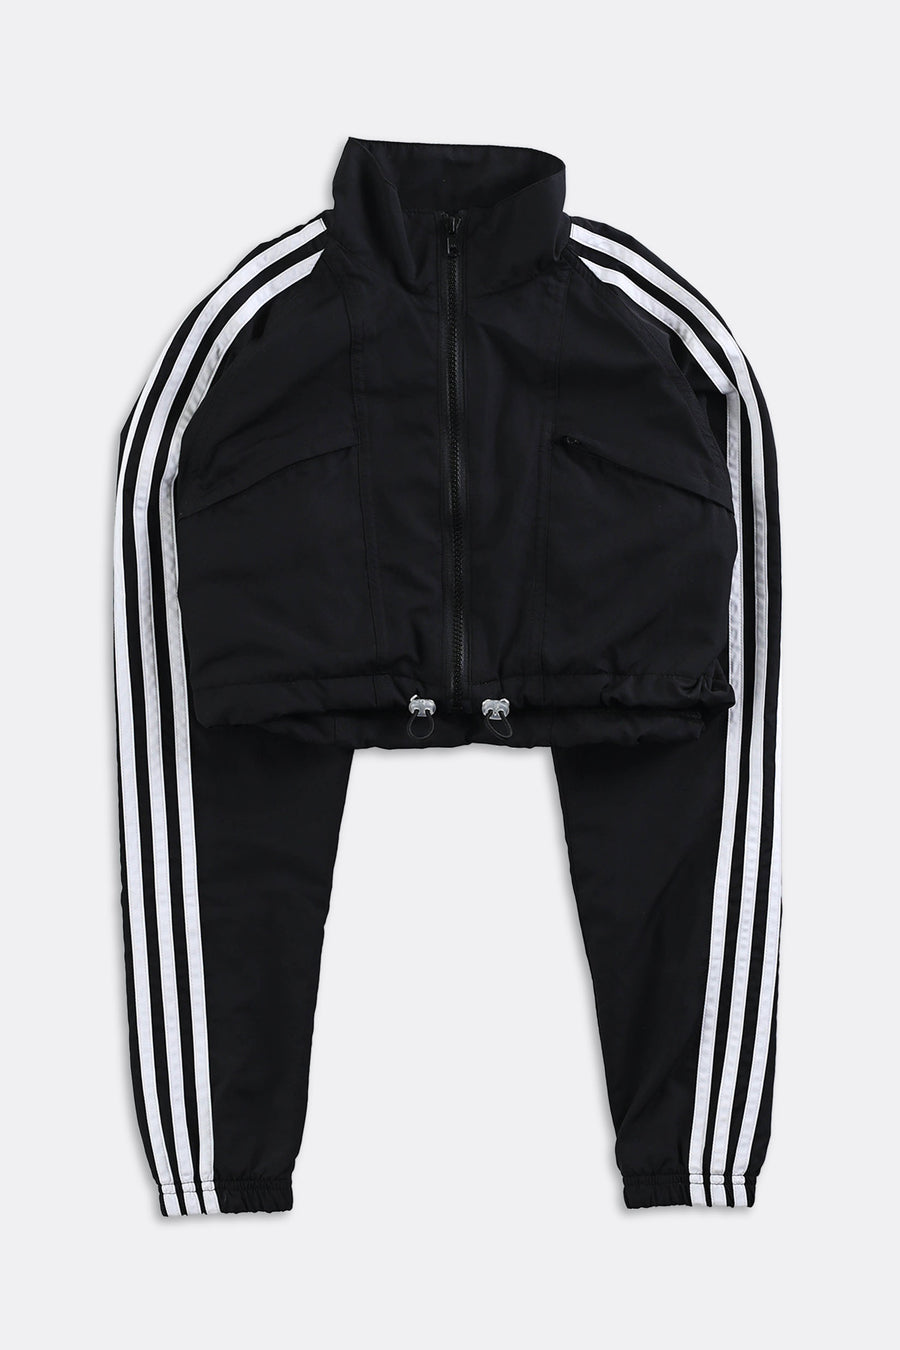 Vintage Adidas Cinched Crop Jacket